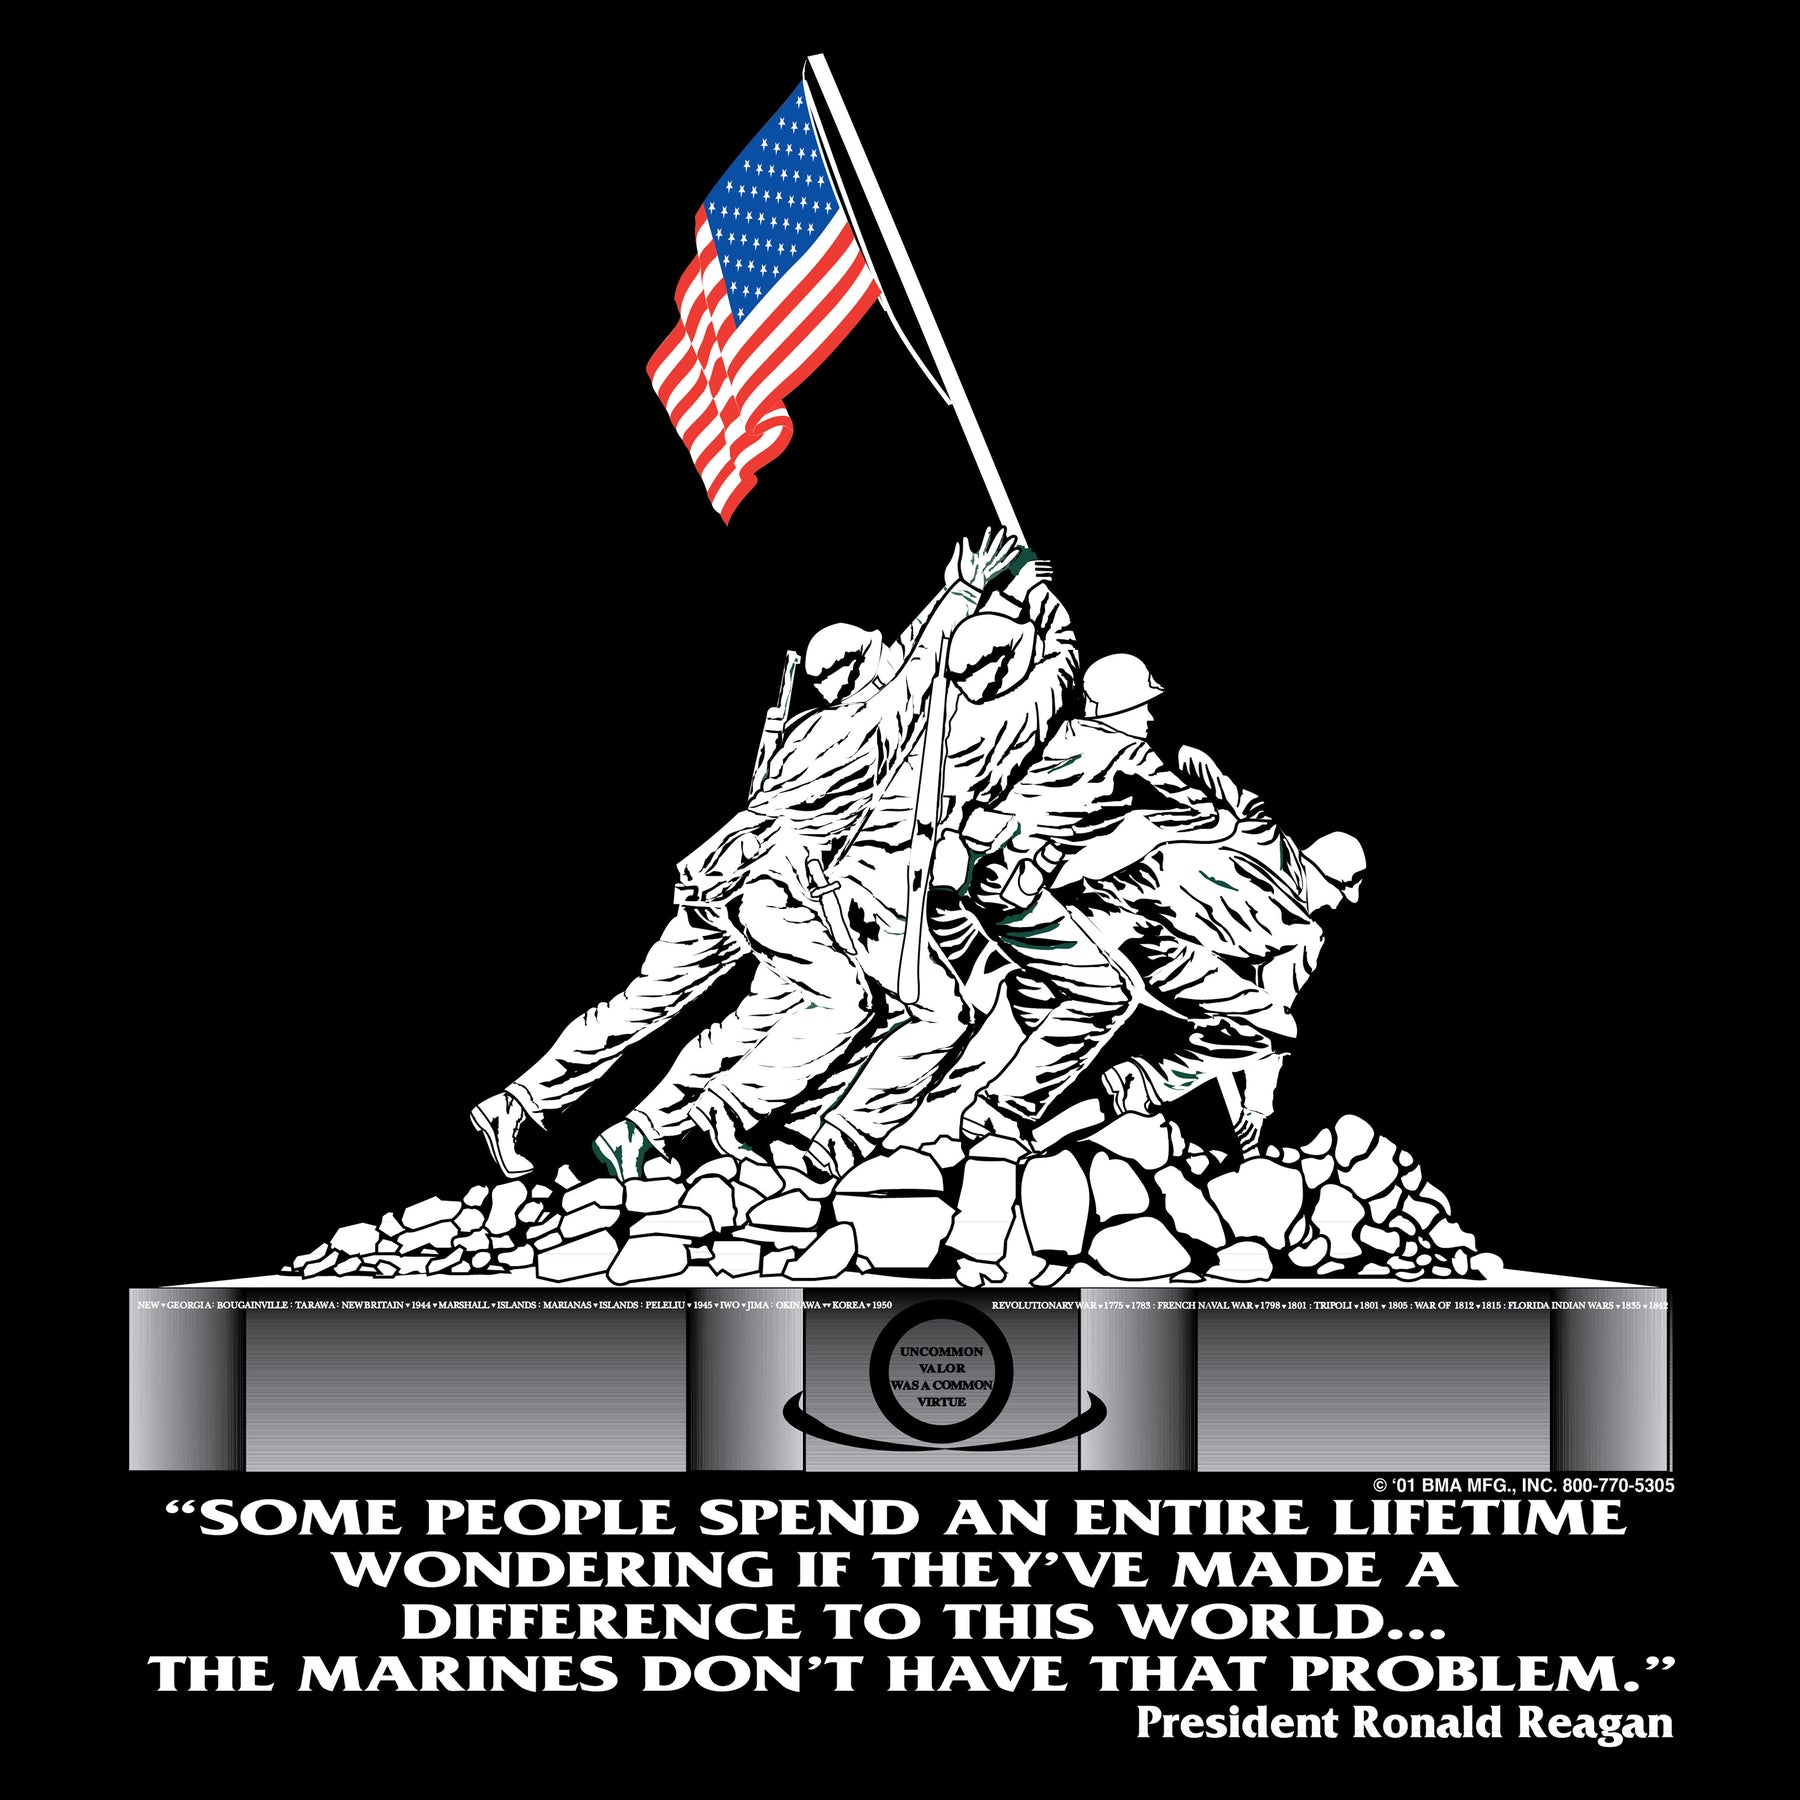 Marines Iwo Jima T-Shirt